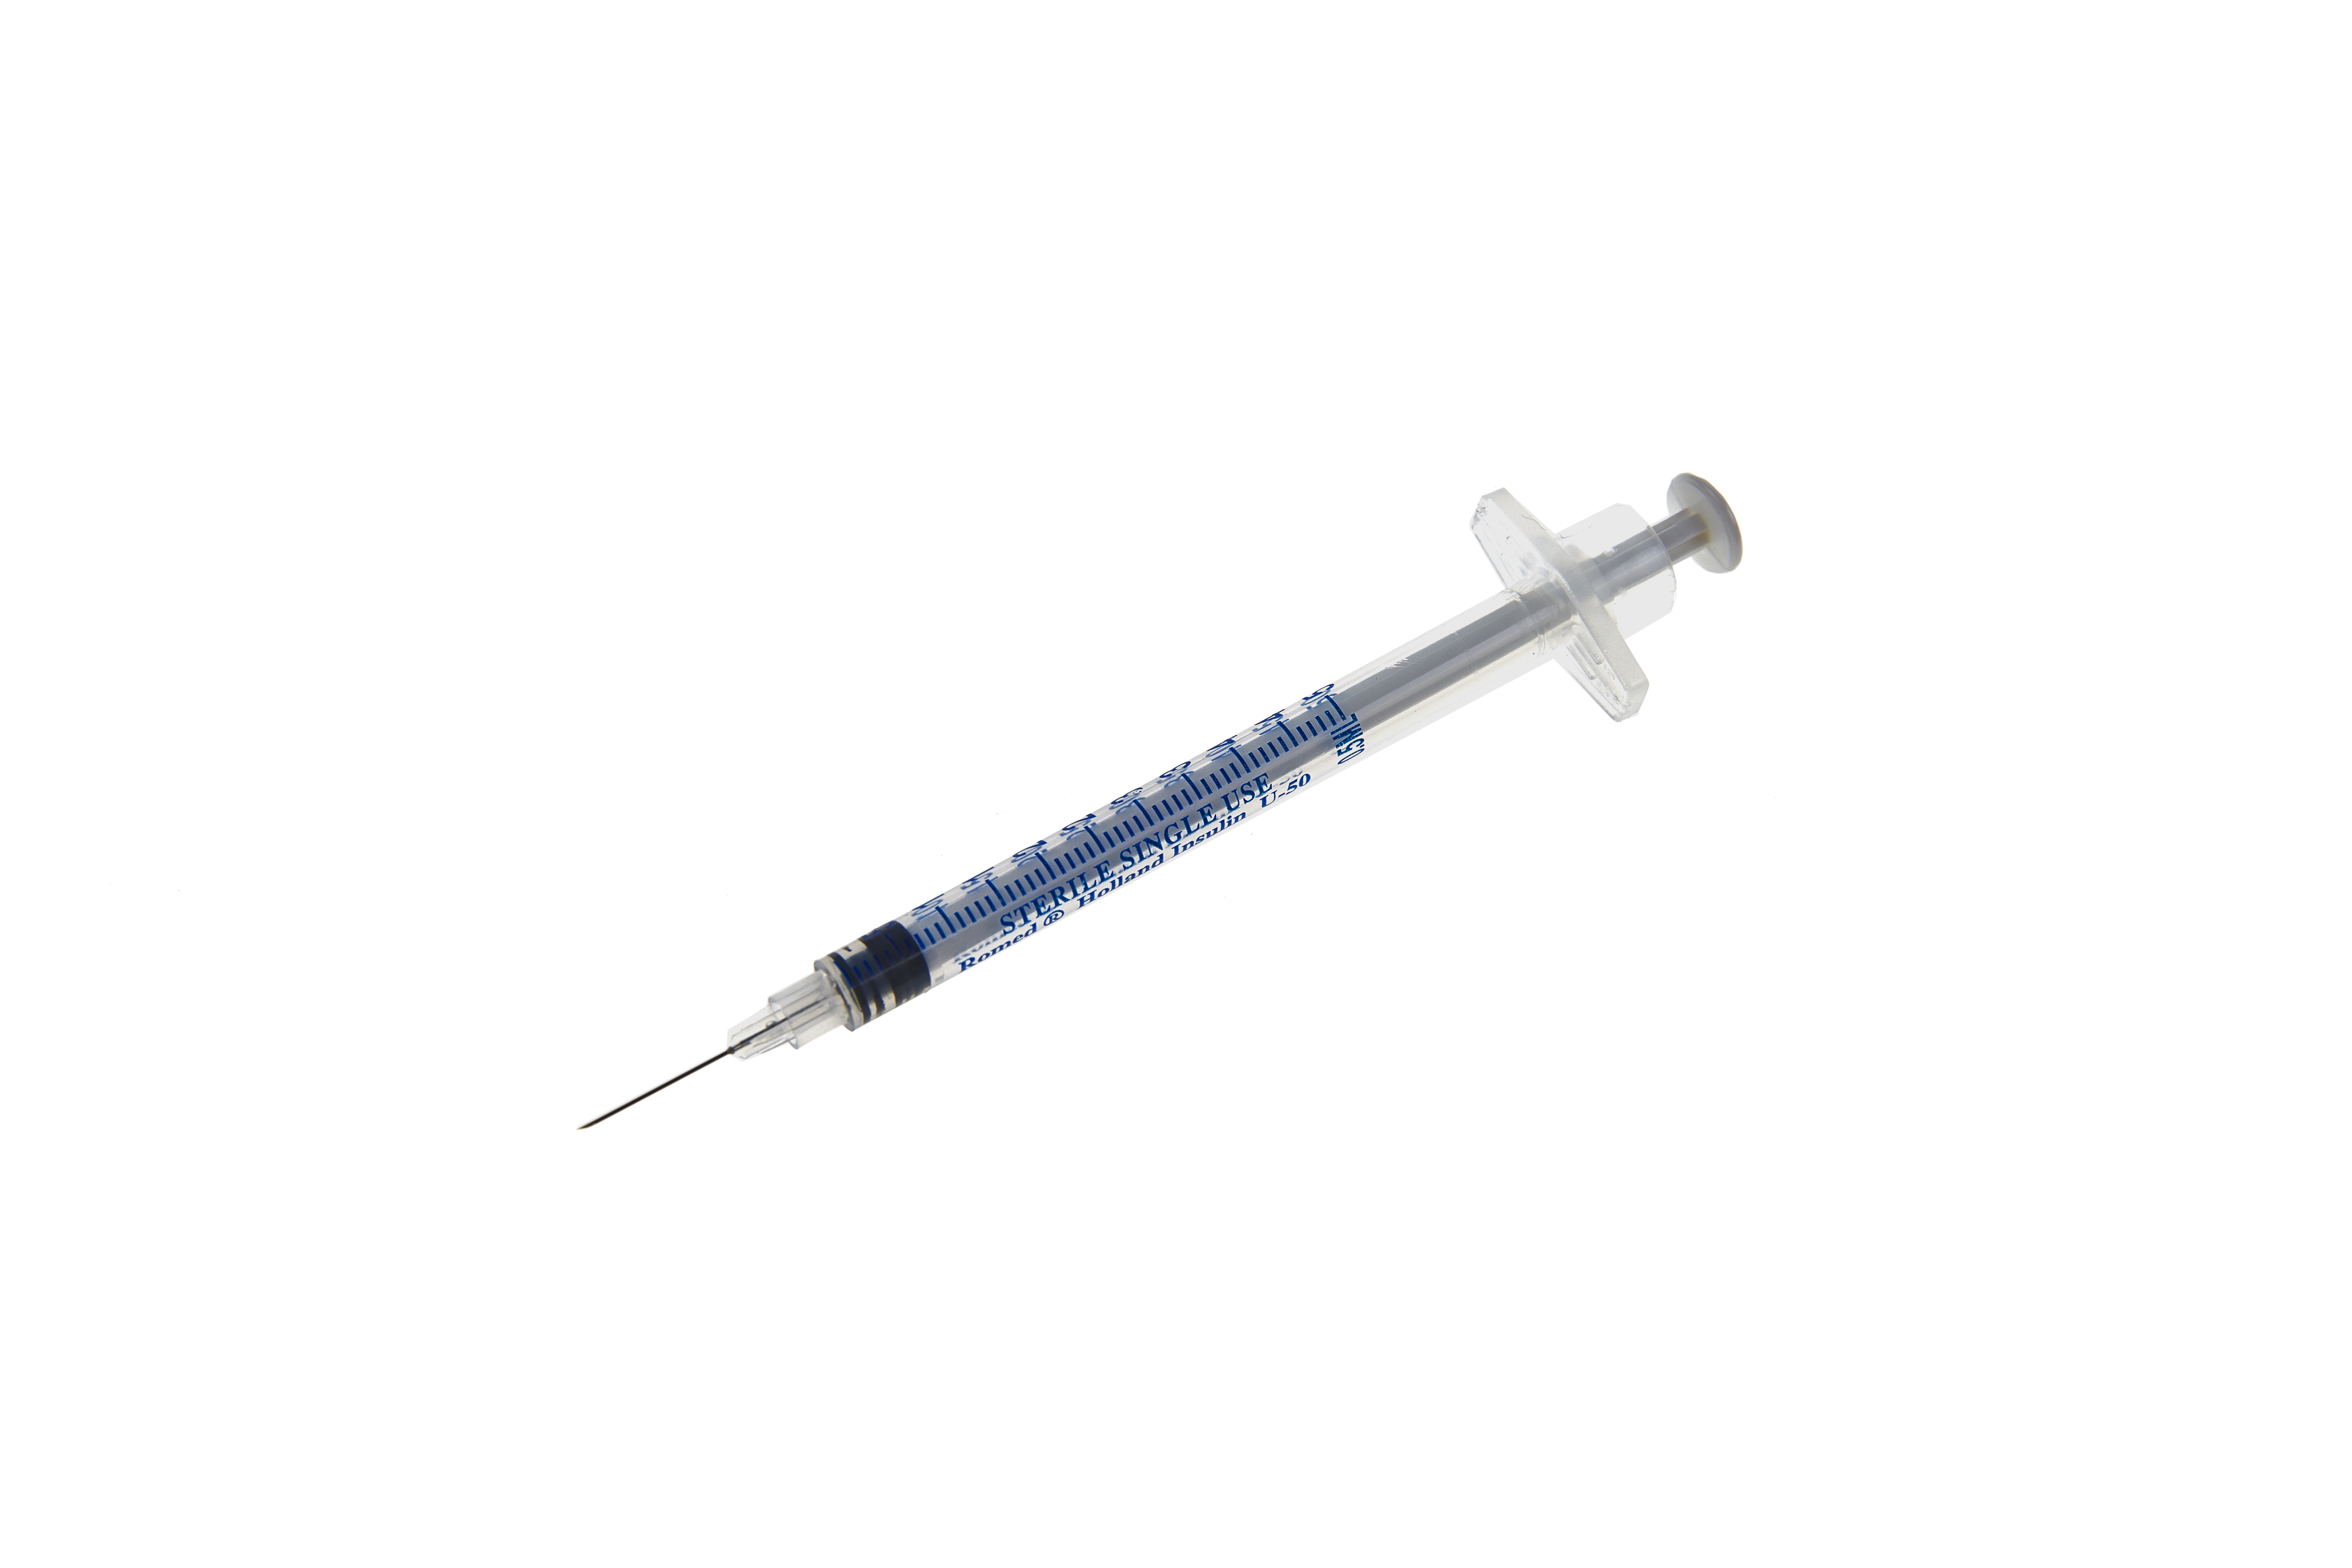 3IS-0.5ML-50U Siringhe da insulina Romed da 0,5 ml con ago integrato, 50 unità, sterili per pezzo, 100 pezzi in una scatola interna, 32 x 100 pezzi = 3.200 pezzi per collo.